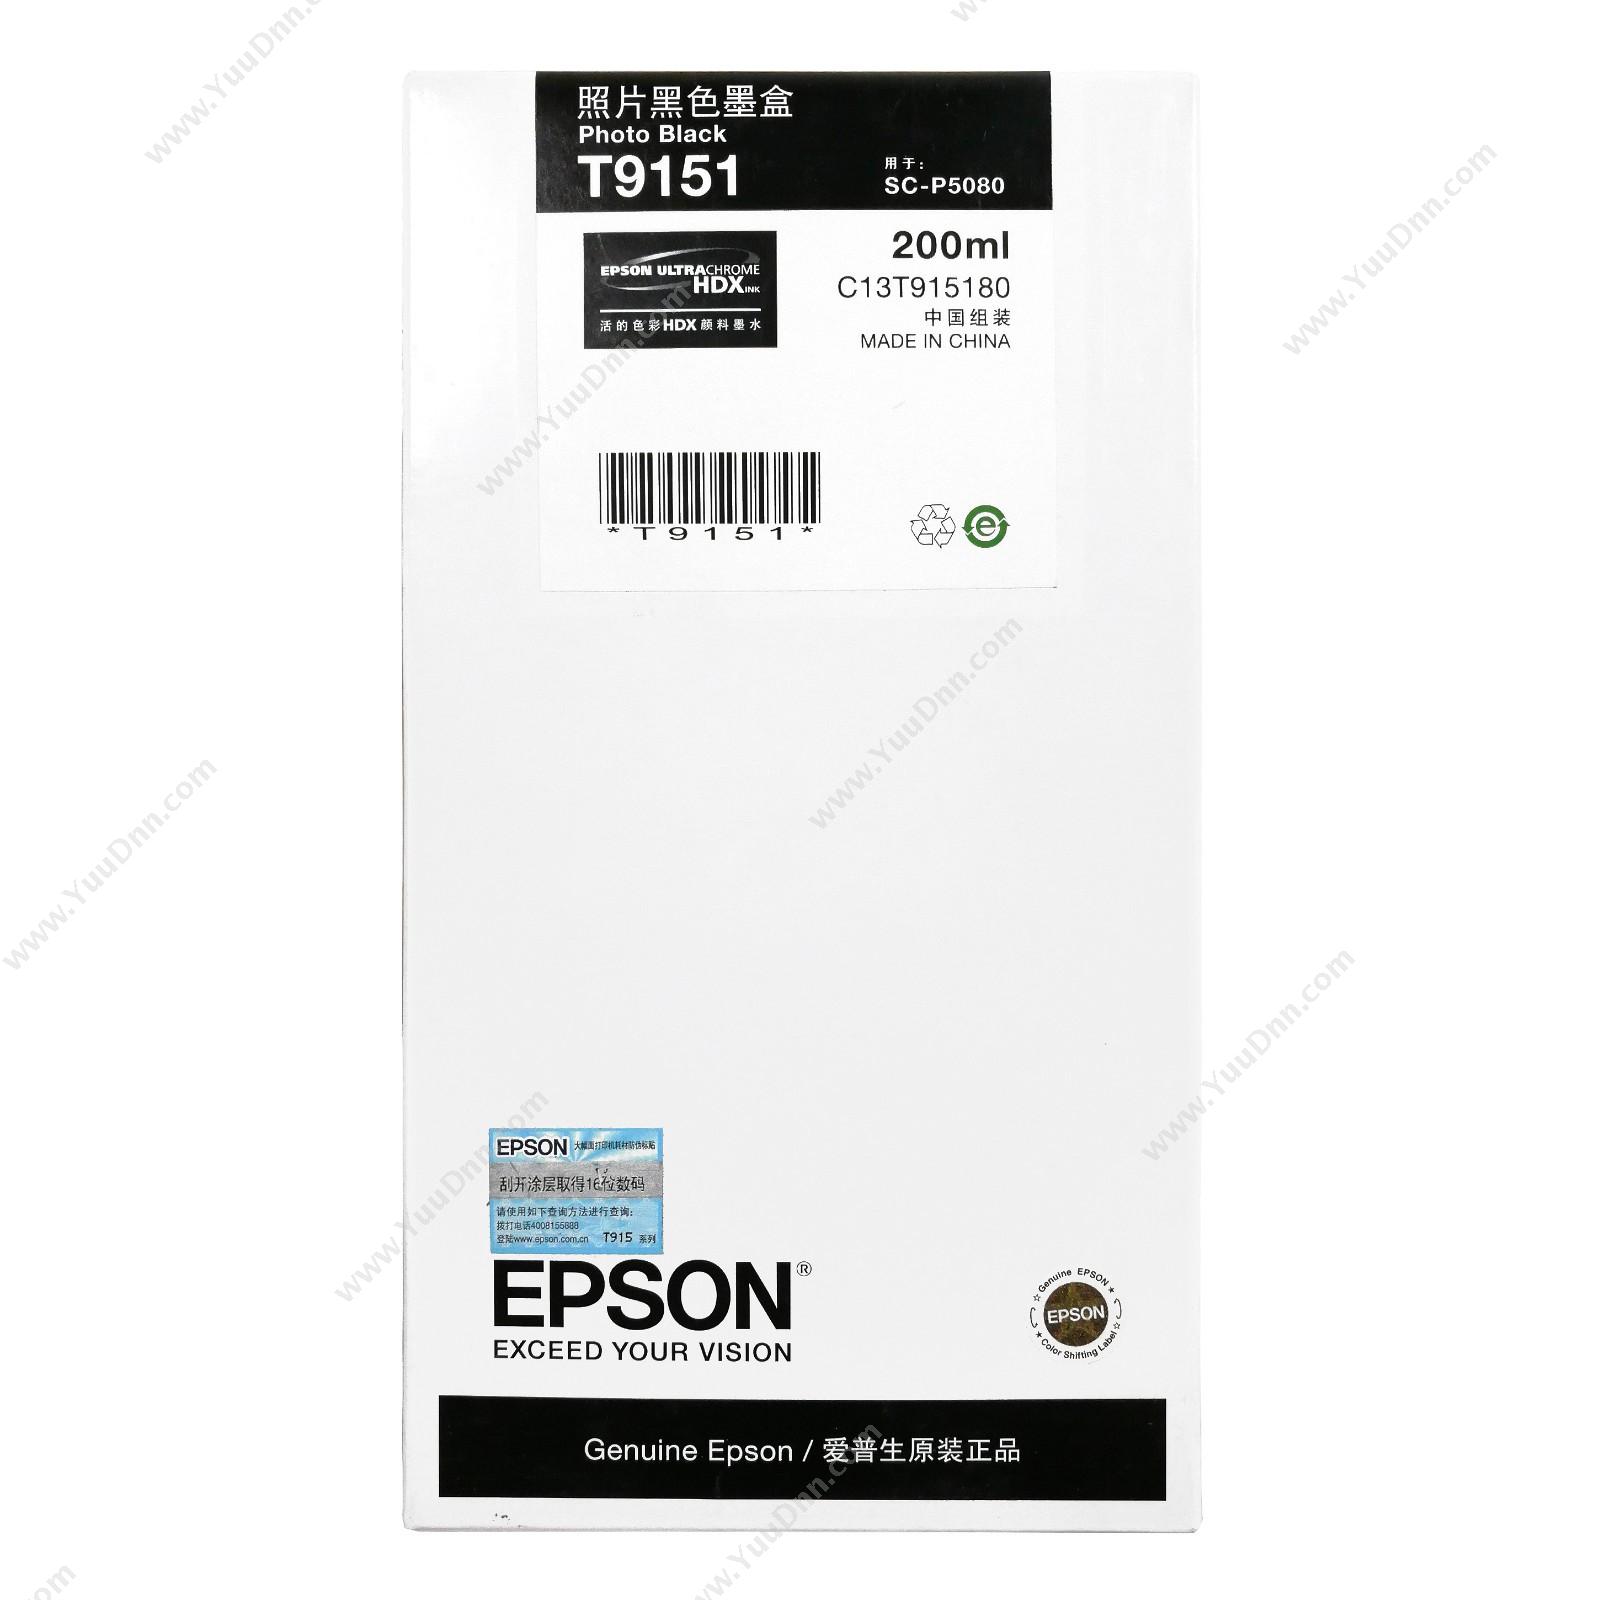 爱普生 EpsonP5080照片黑200ml(C13T915180)墨盒